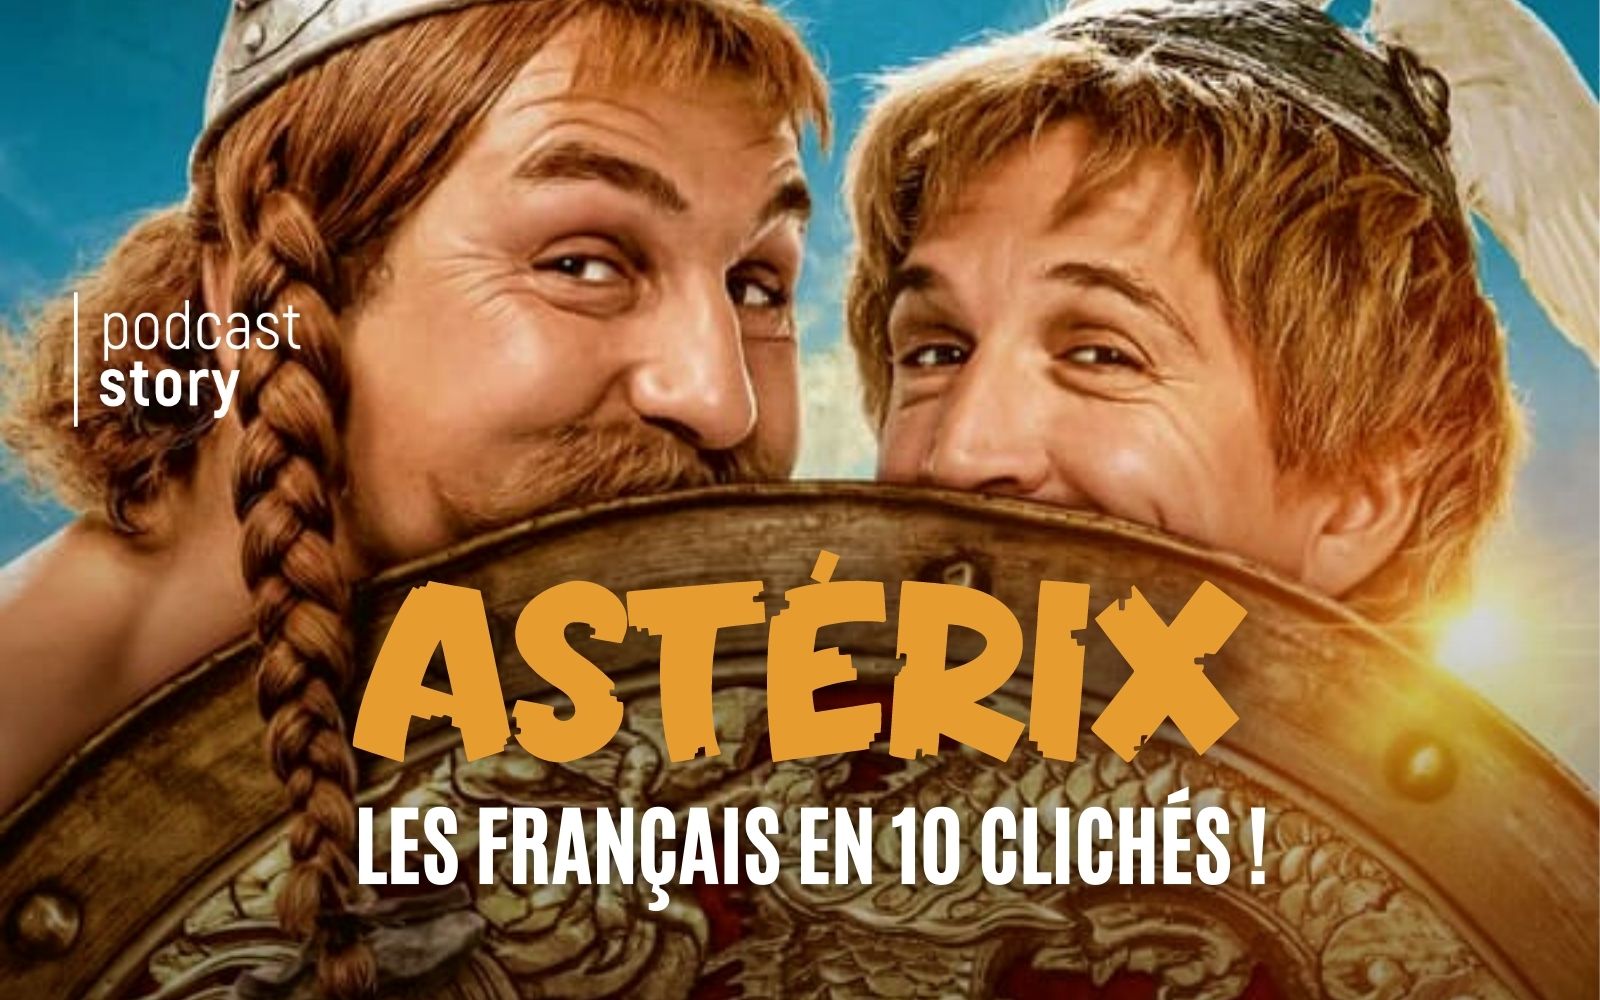 ASTÉRIX – LES FRANÇAIS EN 10 CLICHÉS !